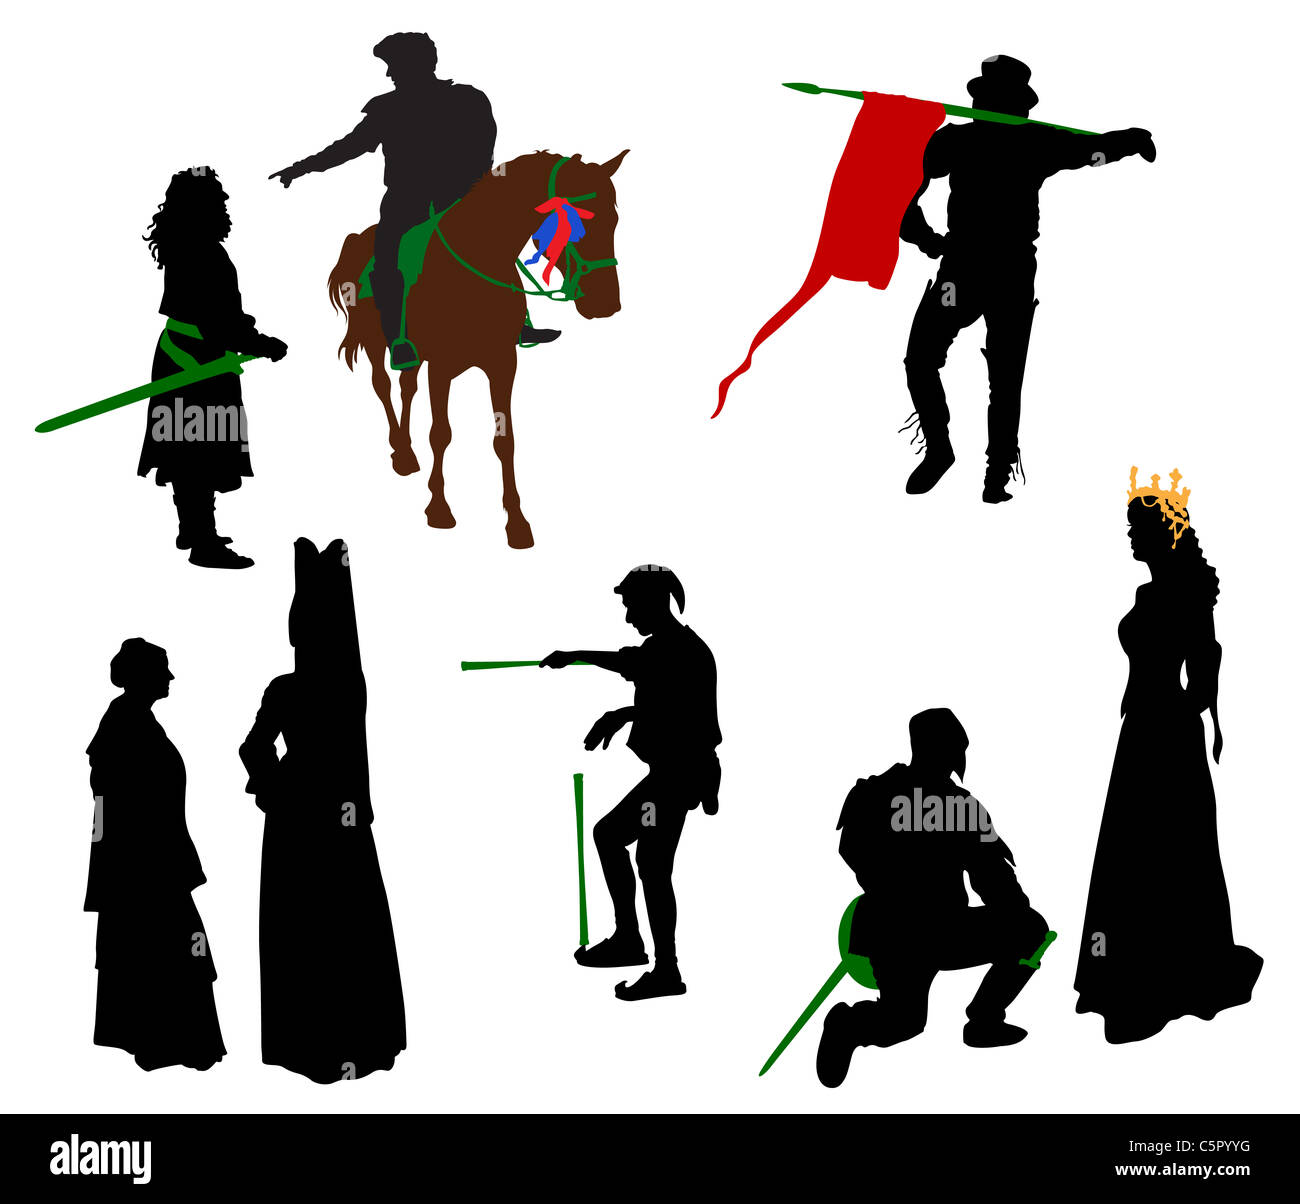 Silhouettes de personnes en costumes médiévaux. Knight, reine, jongleur, nobles. Banque D'Images